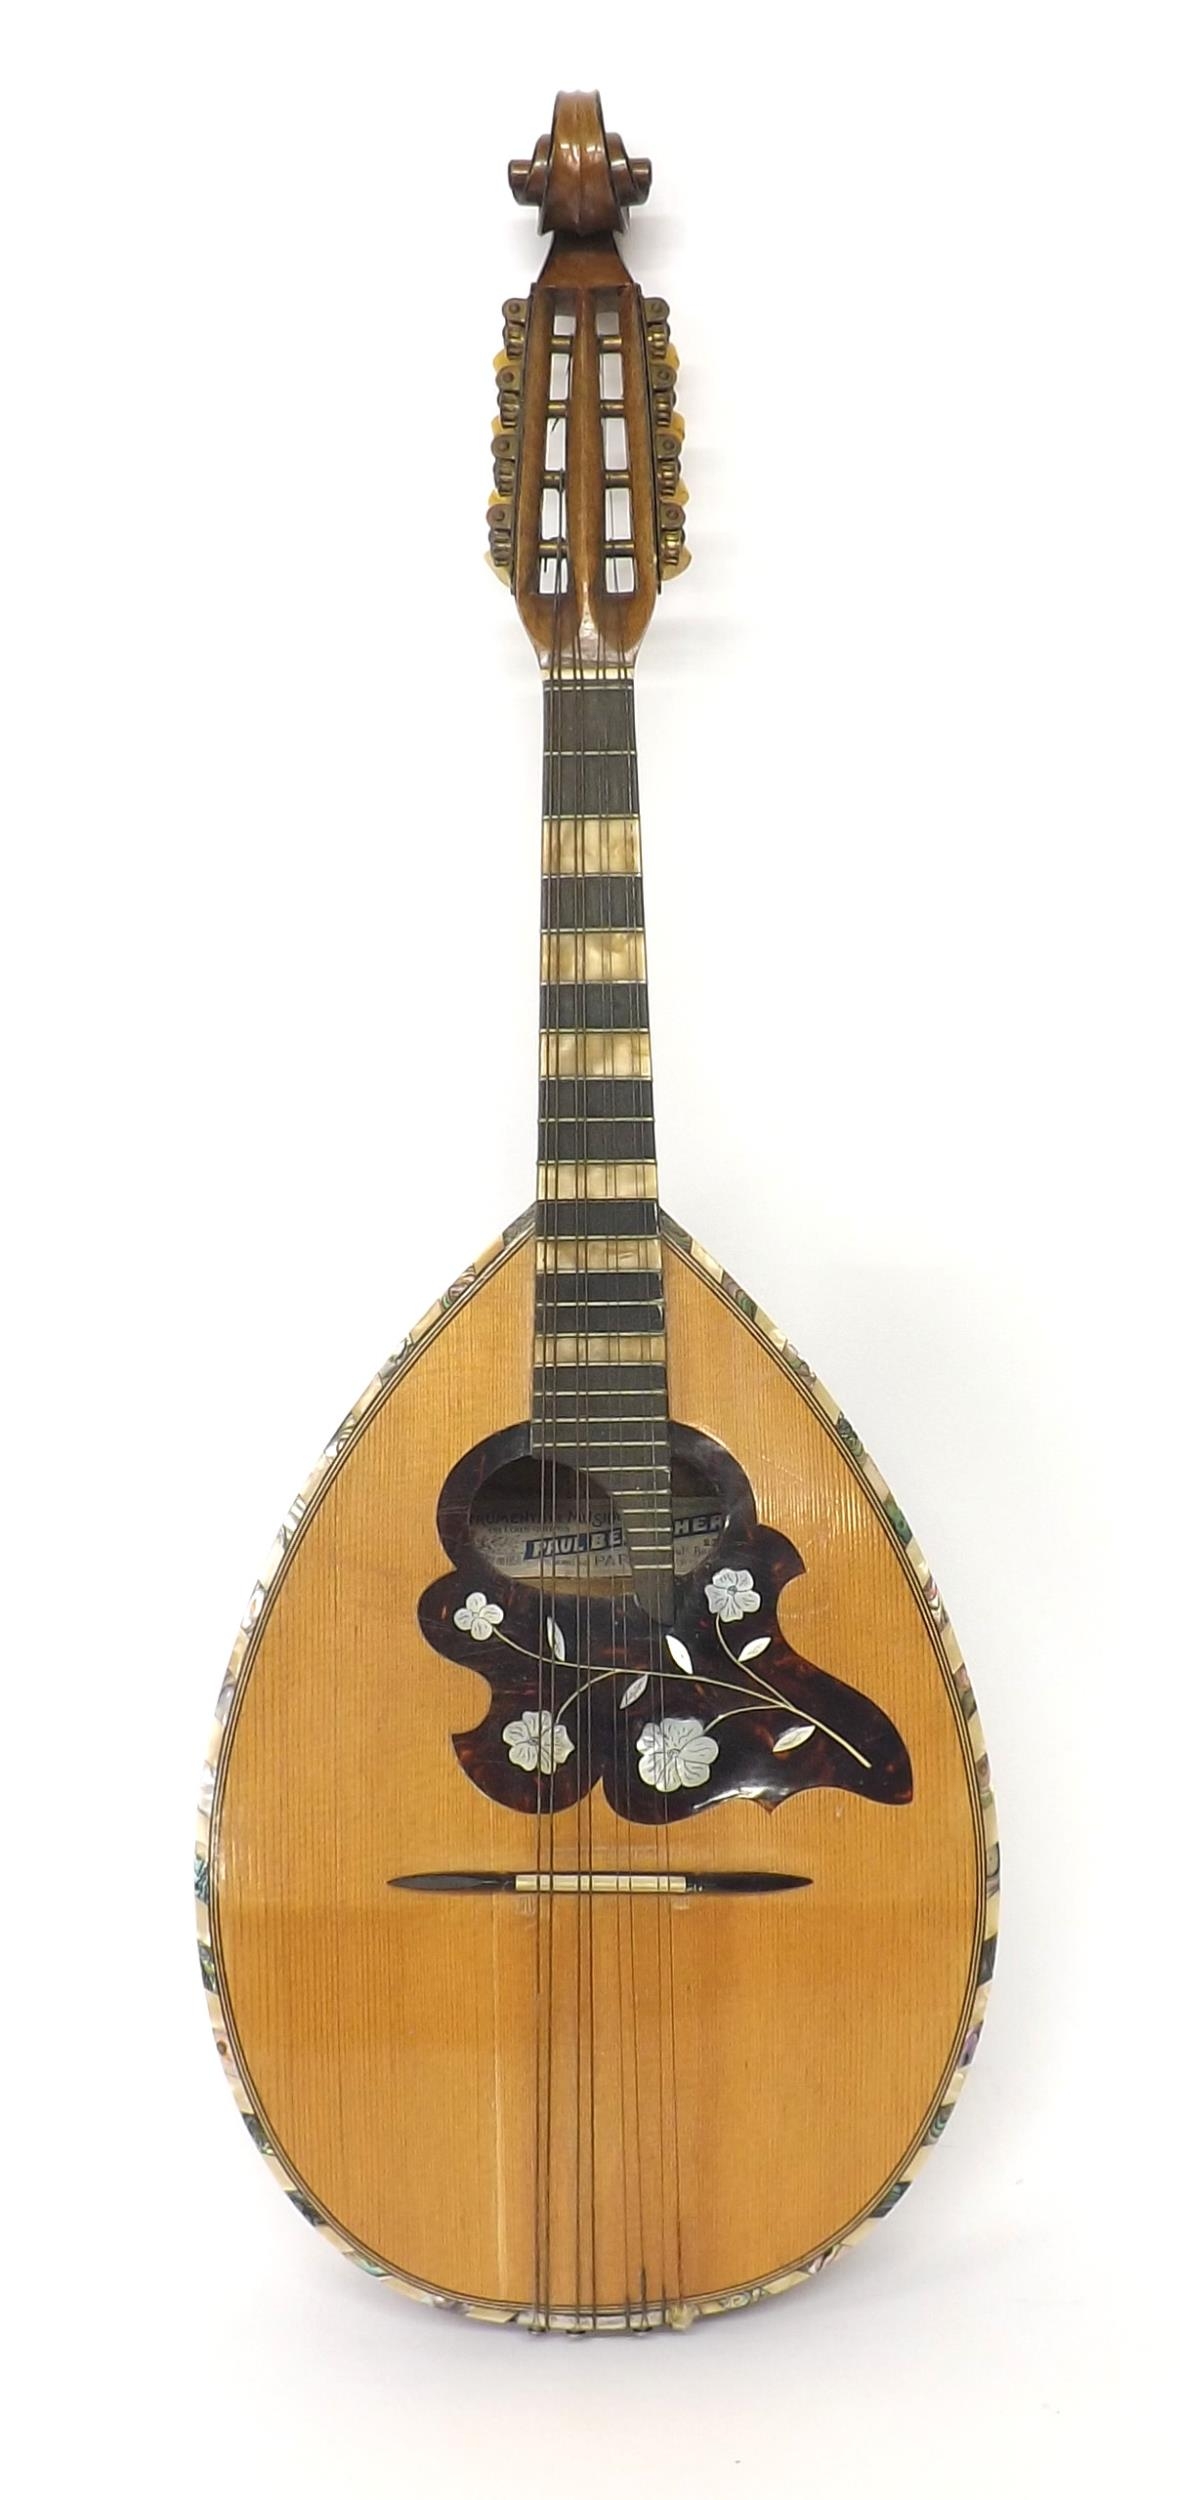 Unusual flatback pear shaped mandolin labelled Paul Beuscher, Instruments de Musique...Paris, with